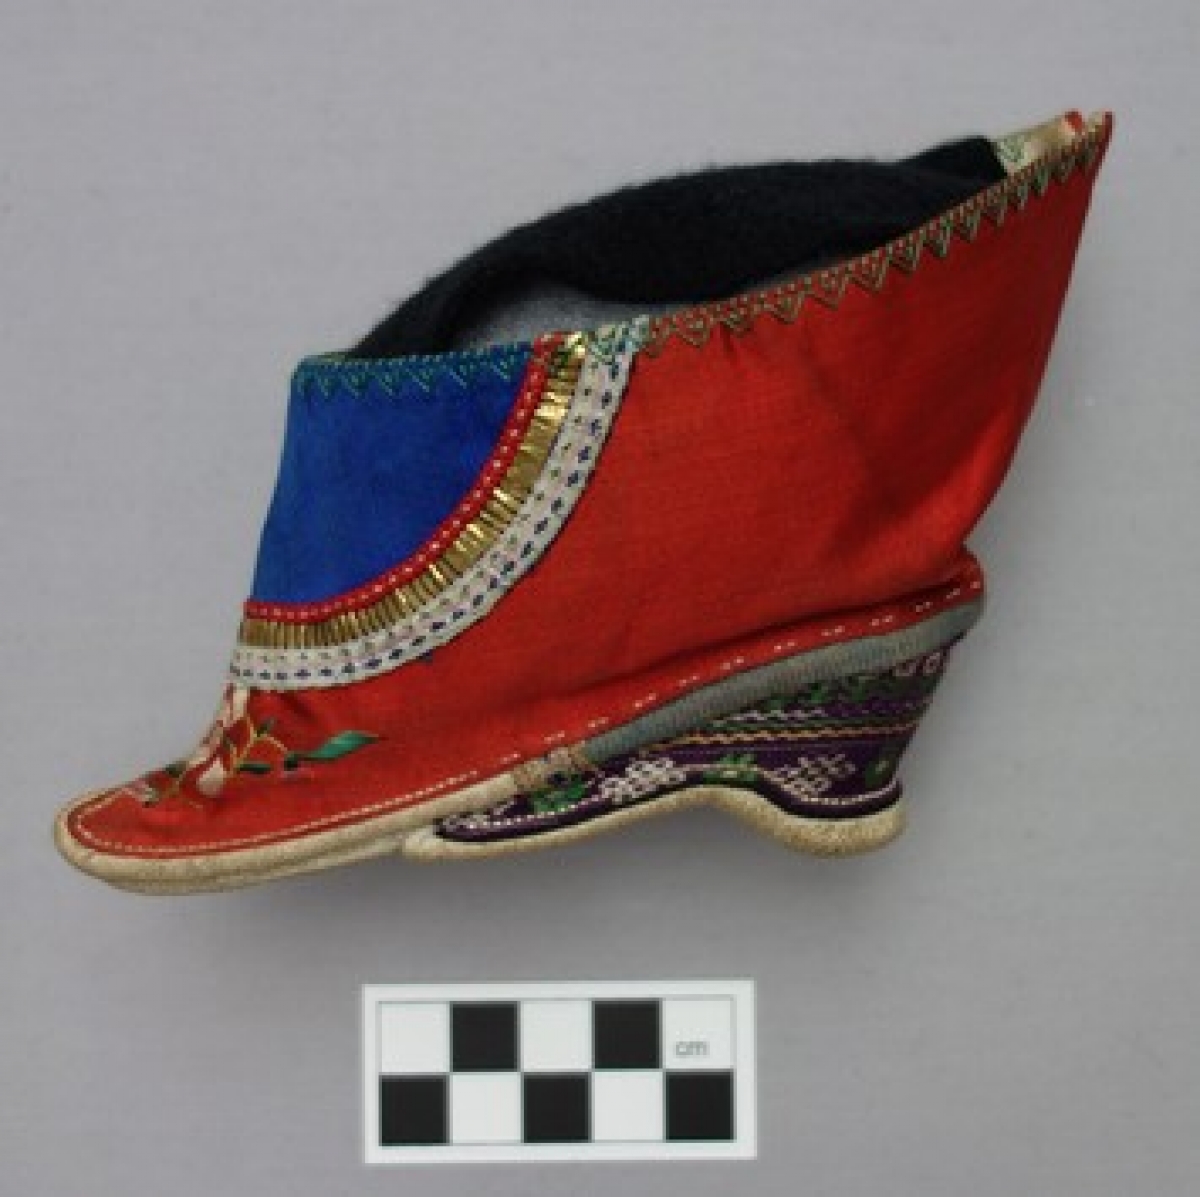 Bridal lotus shoe, early twentieth century.